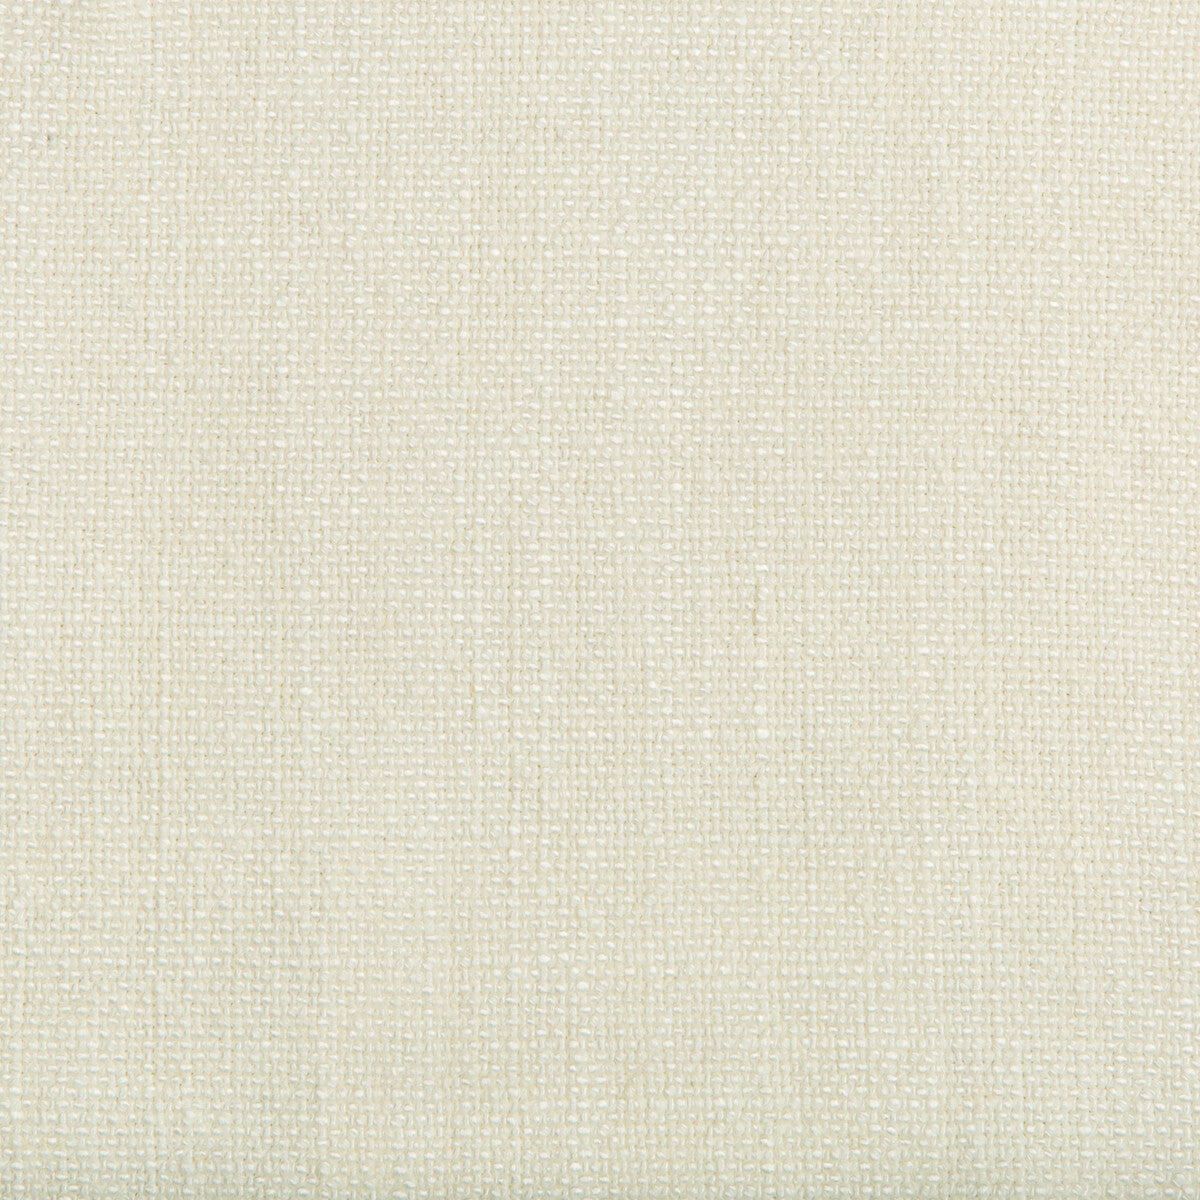 Kravet Basics fabric in 35189-111 color - pattern 35189.111.0 - by Kravet Basics